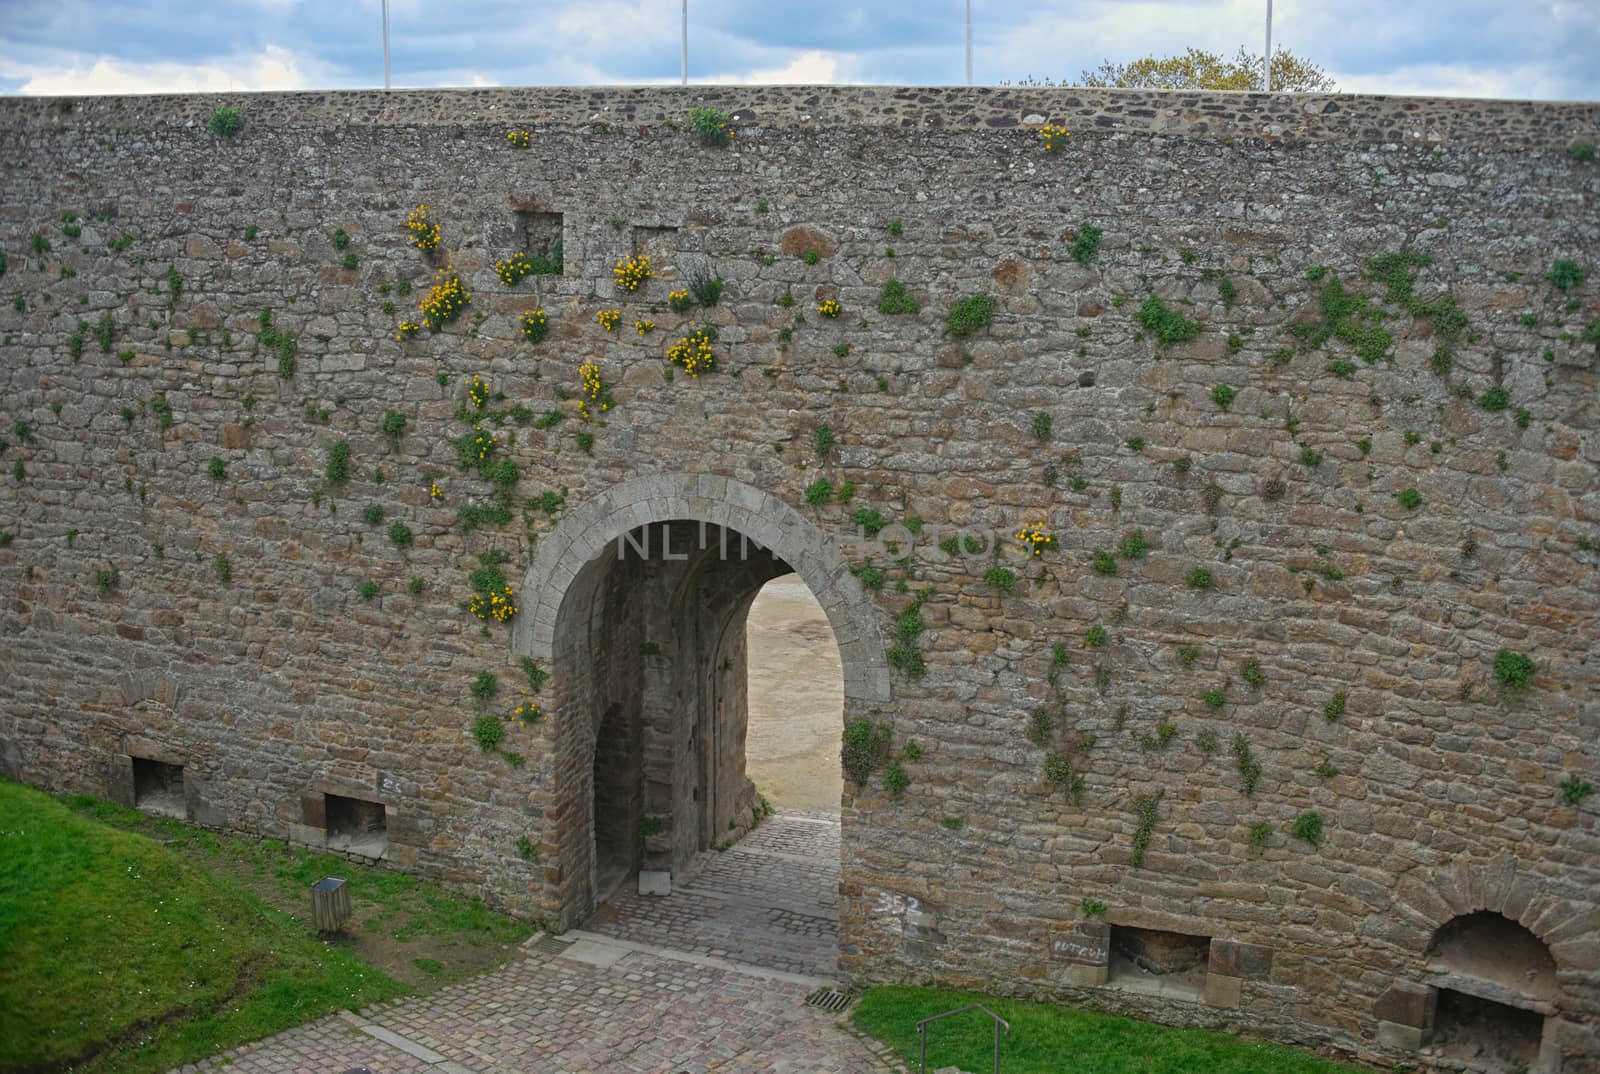 Big stone walls and gate at Dinan fortress, France